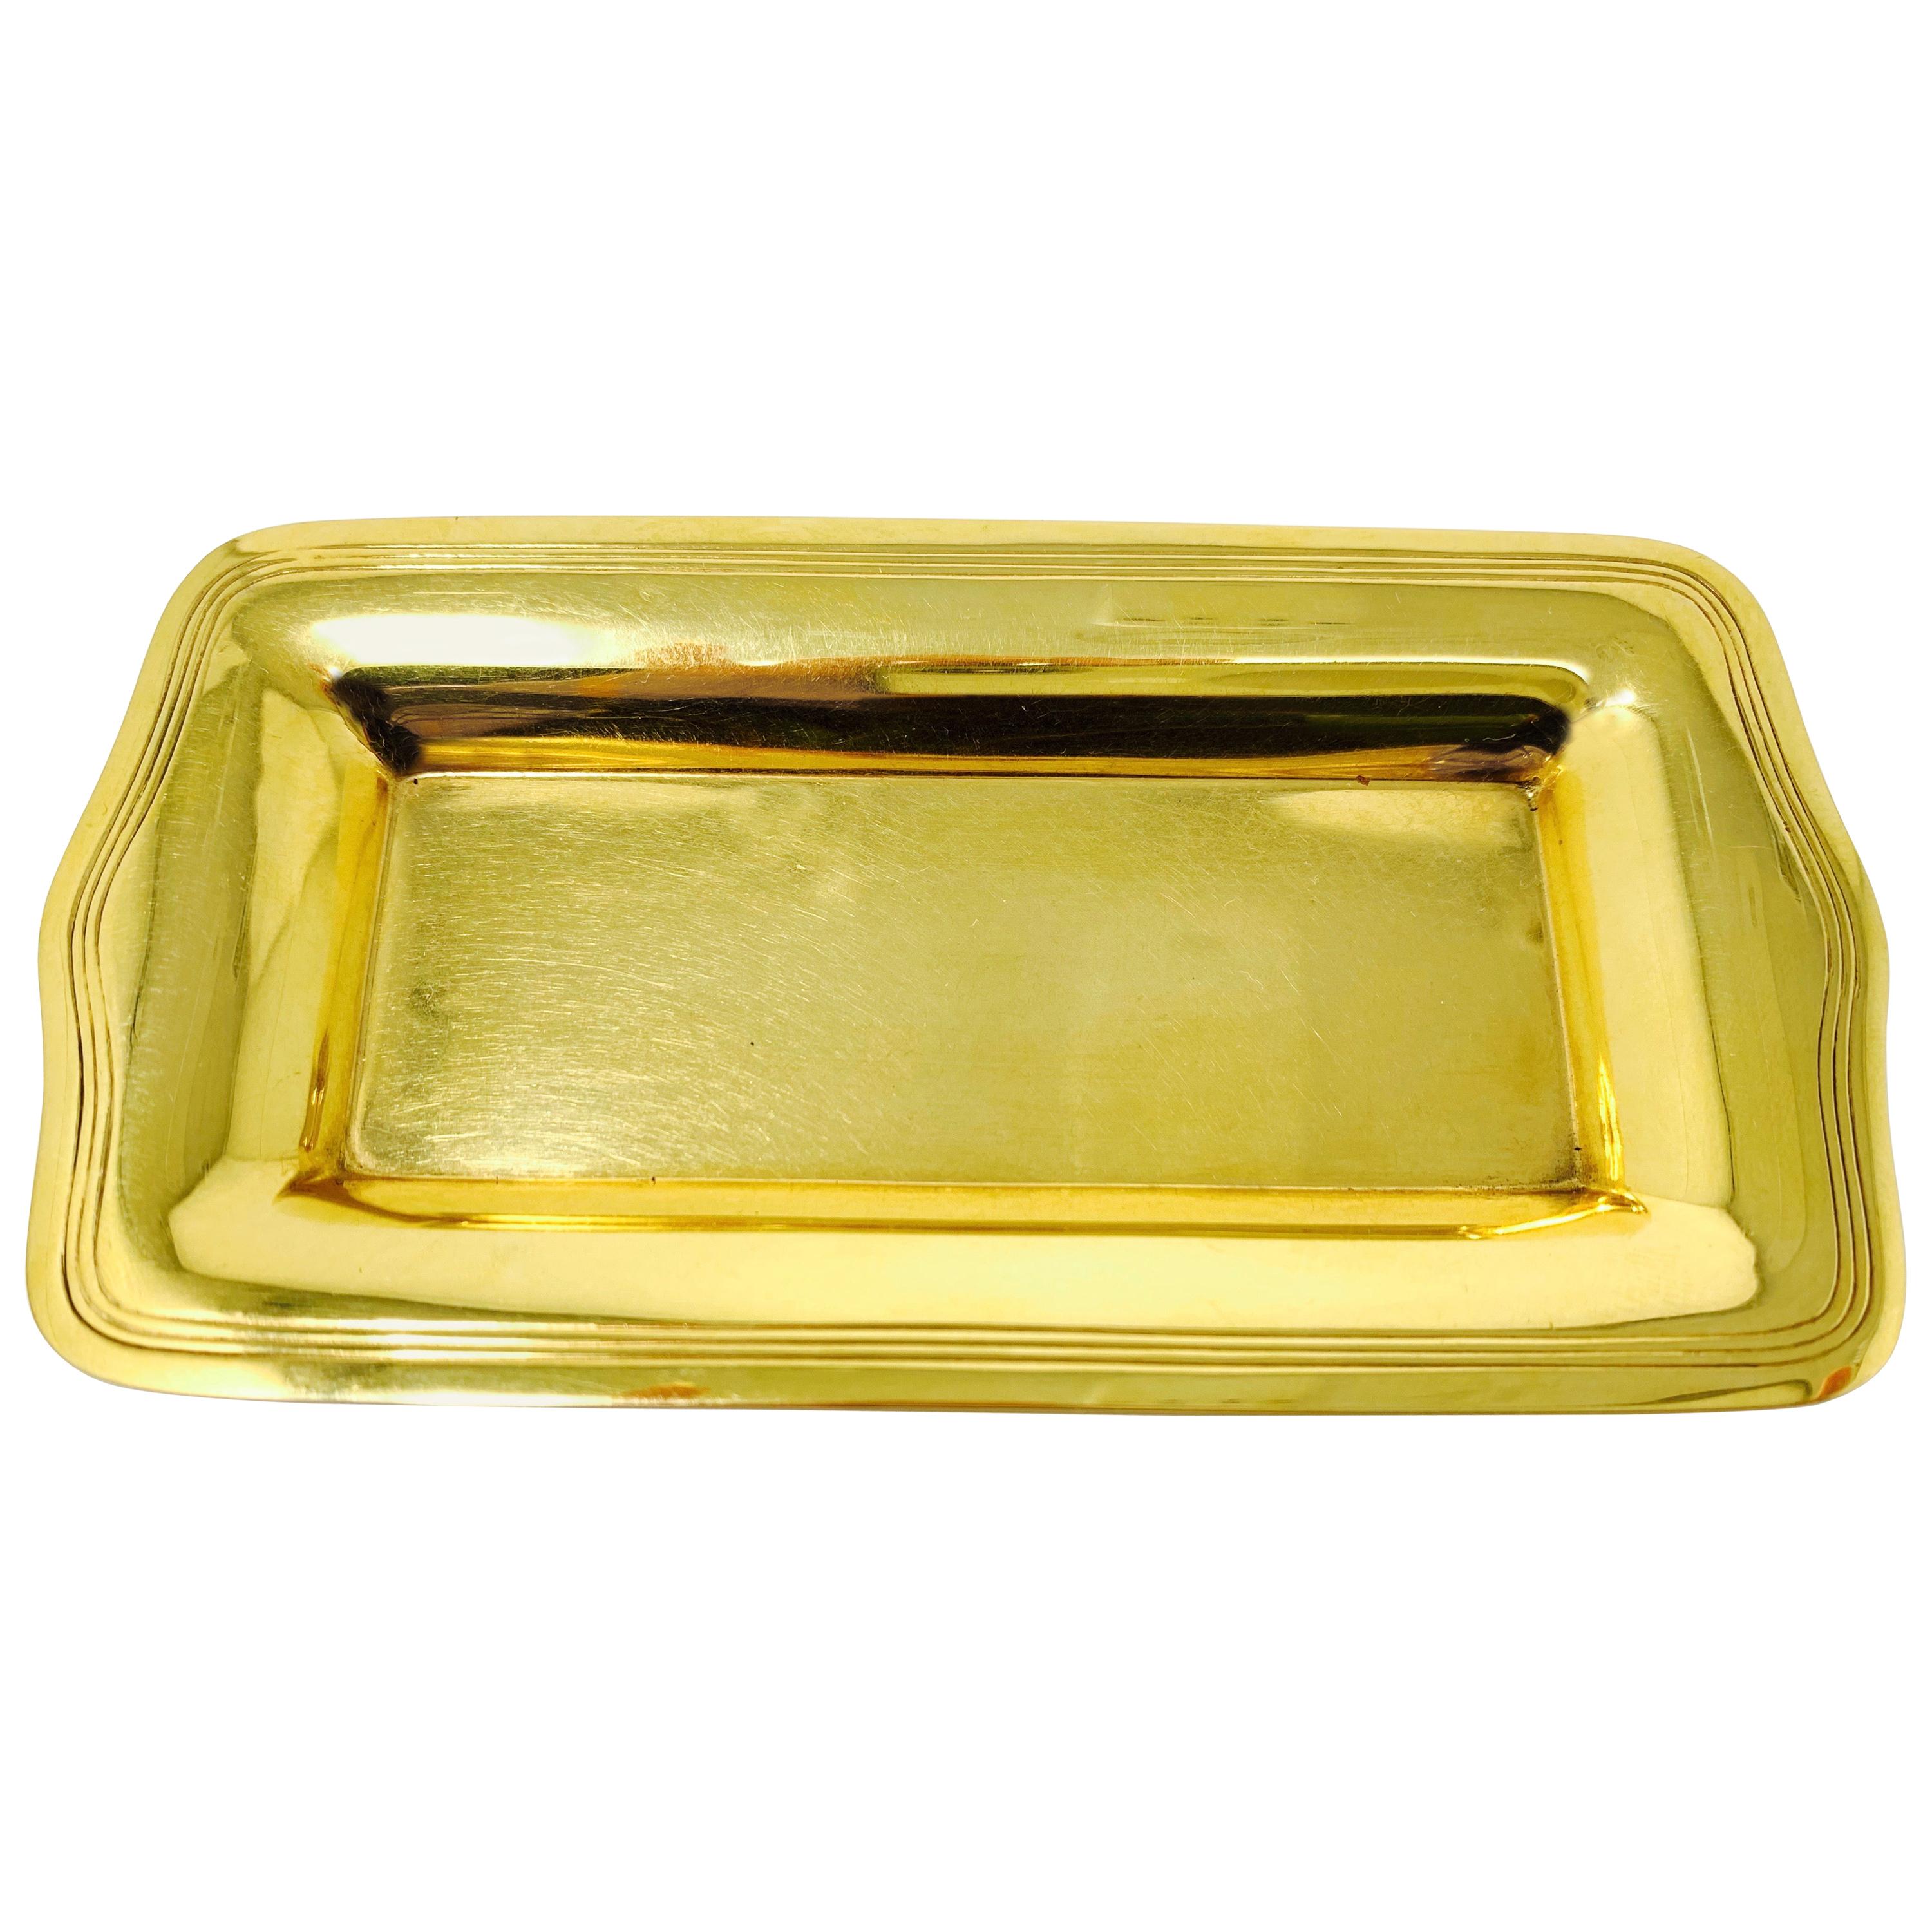 Tiffany & Co. 18 Karat Yellow Gold Tray